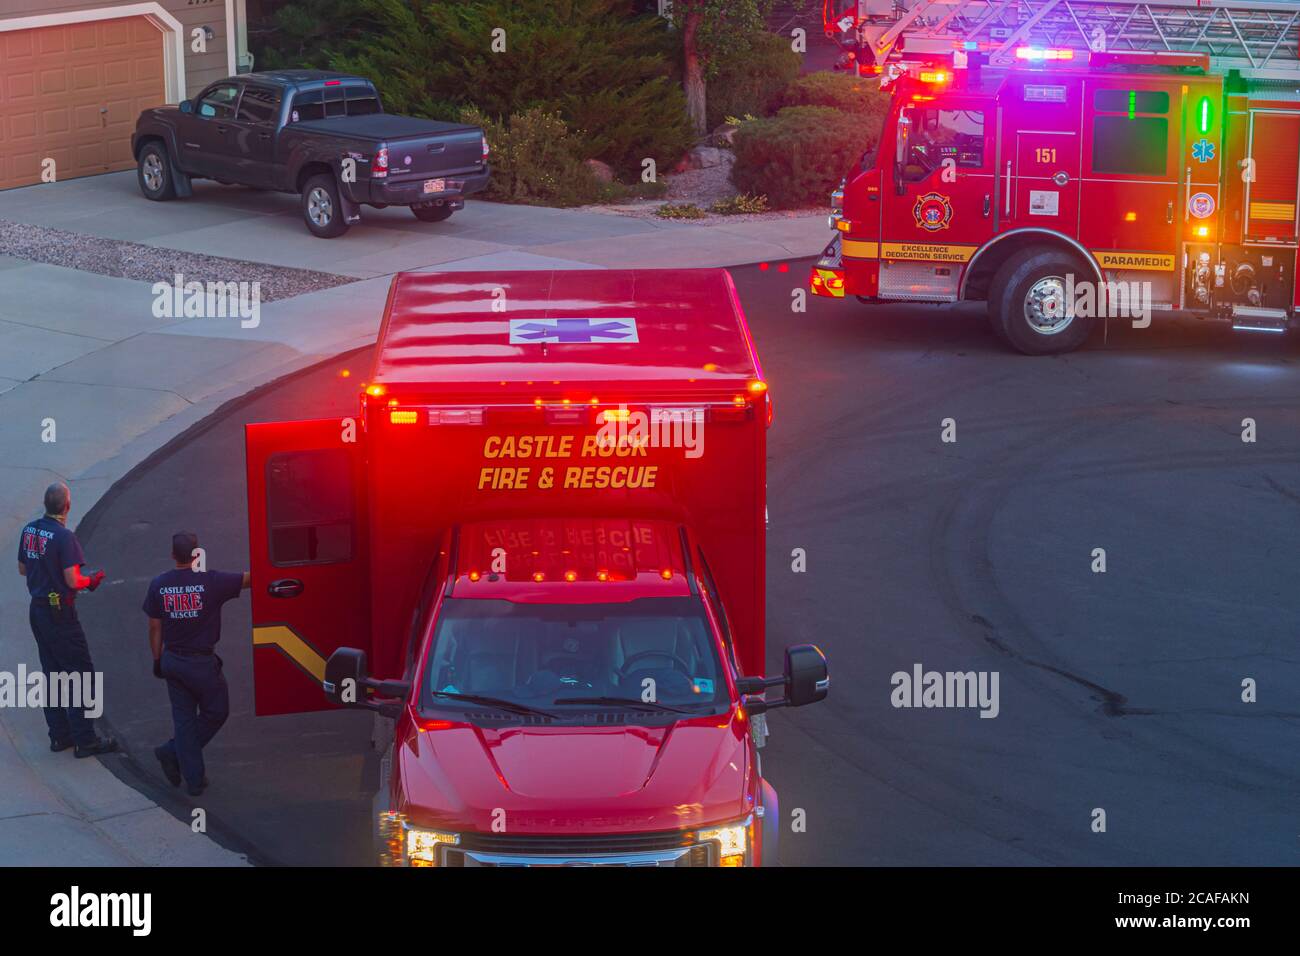 Di notte, due paramedici aspettano che l'anziano venga portato dalla sua casa nella loro ambulanza per il transito in un ospedale, Castle Rock Colorado USA. Foto Stock